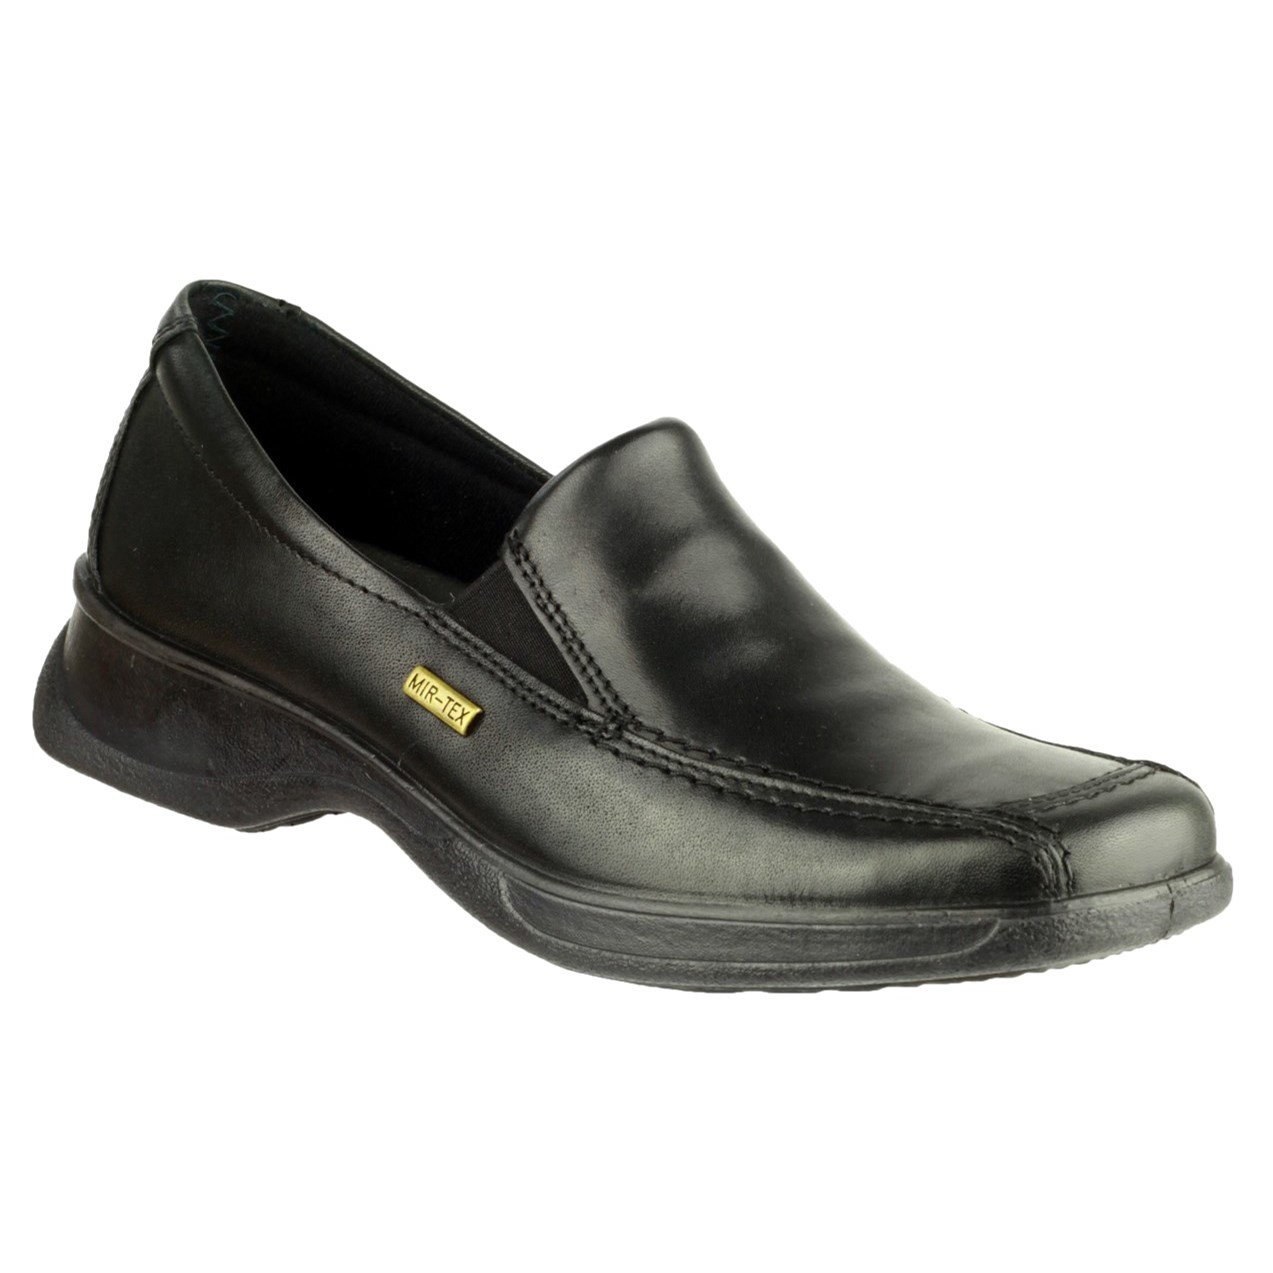 Cotswold Women's Hazelton 2 Waterproof Shoe Black 32983 - Black 7